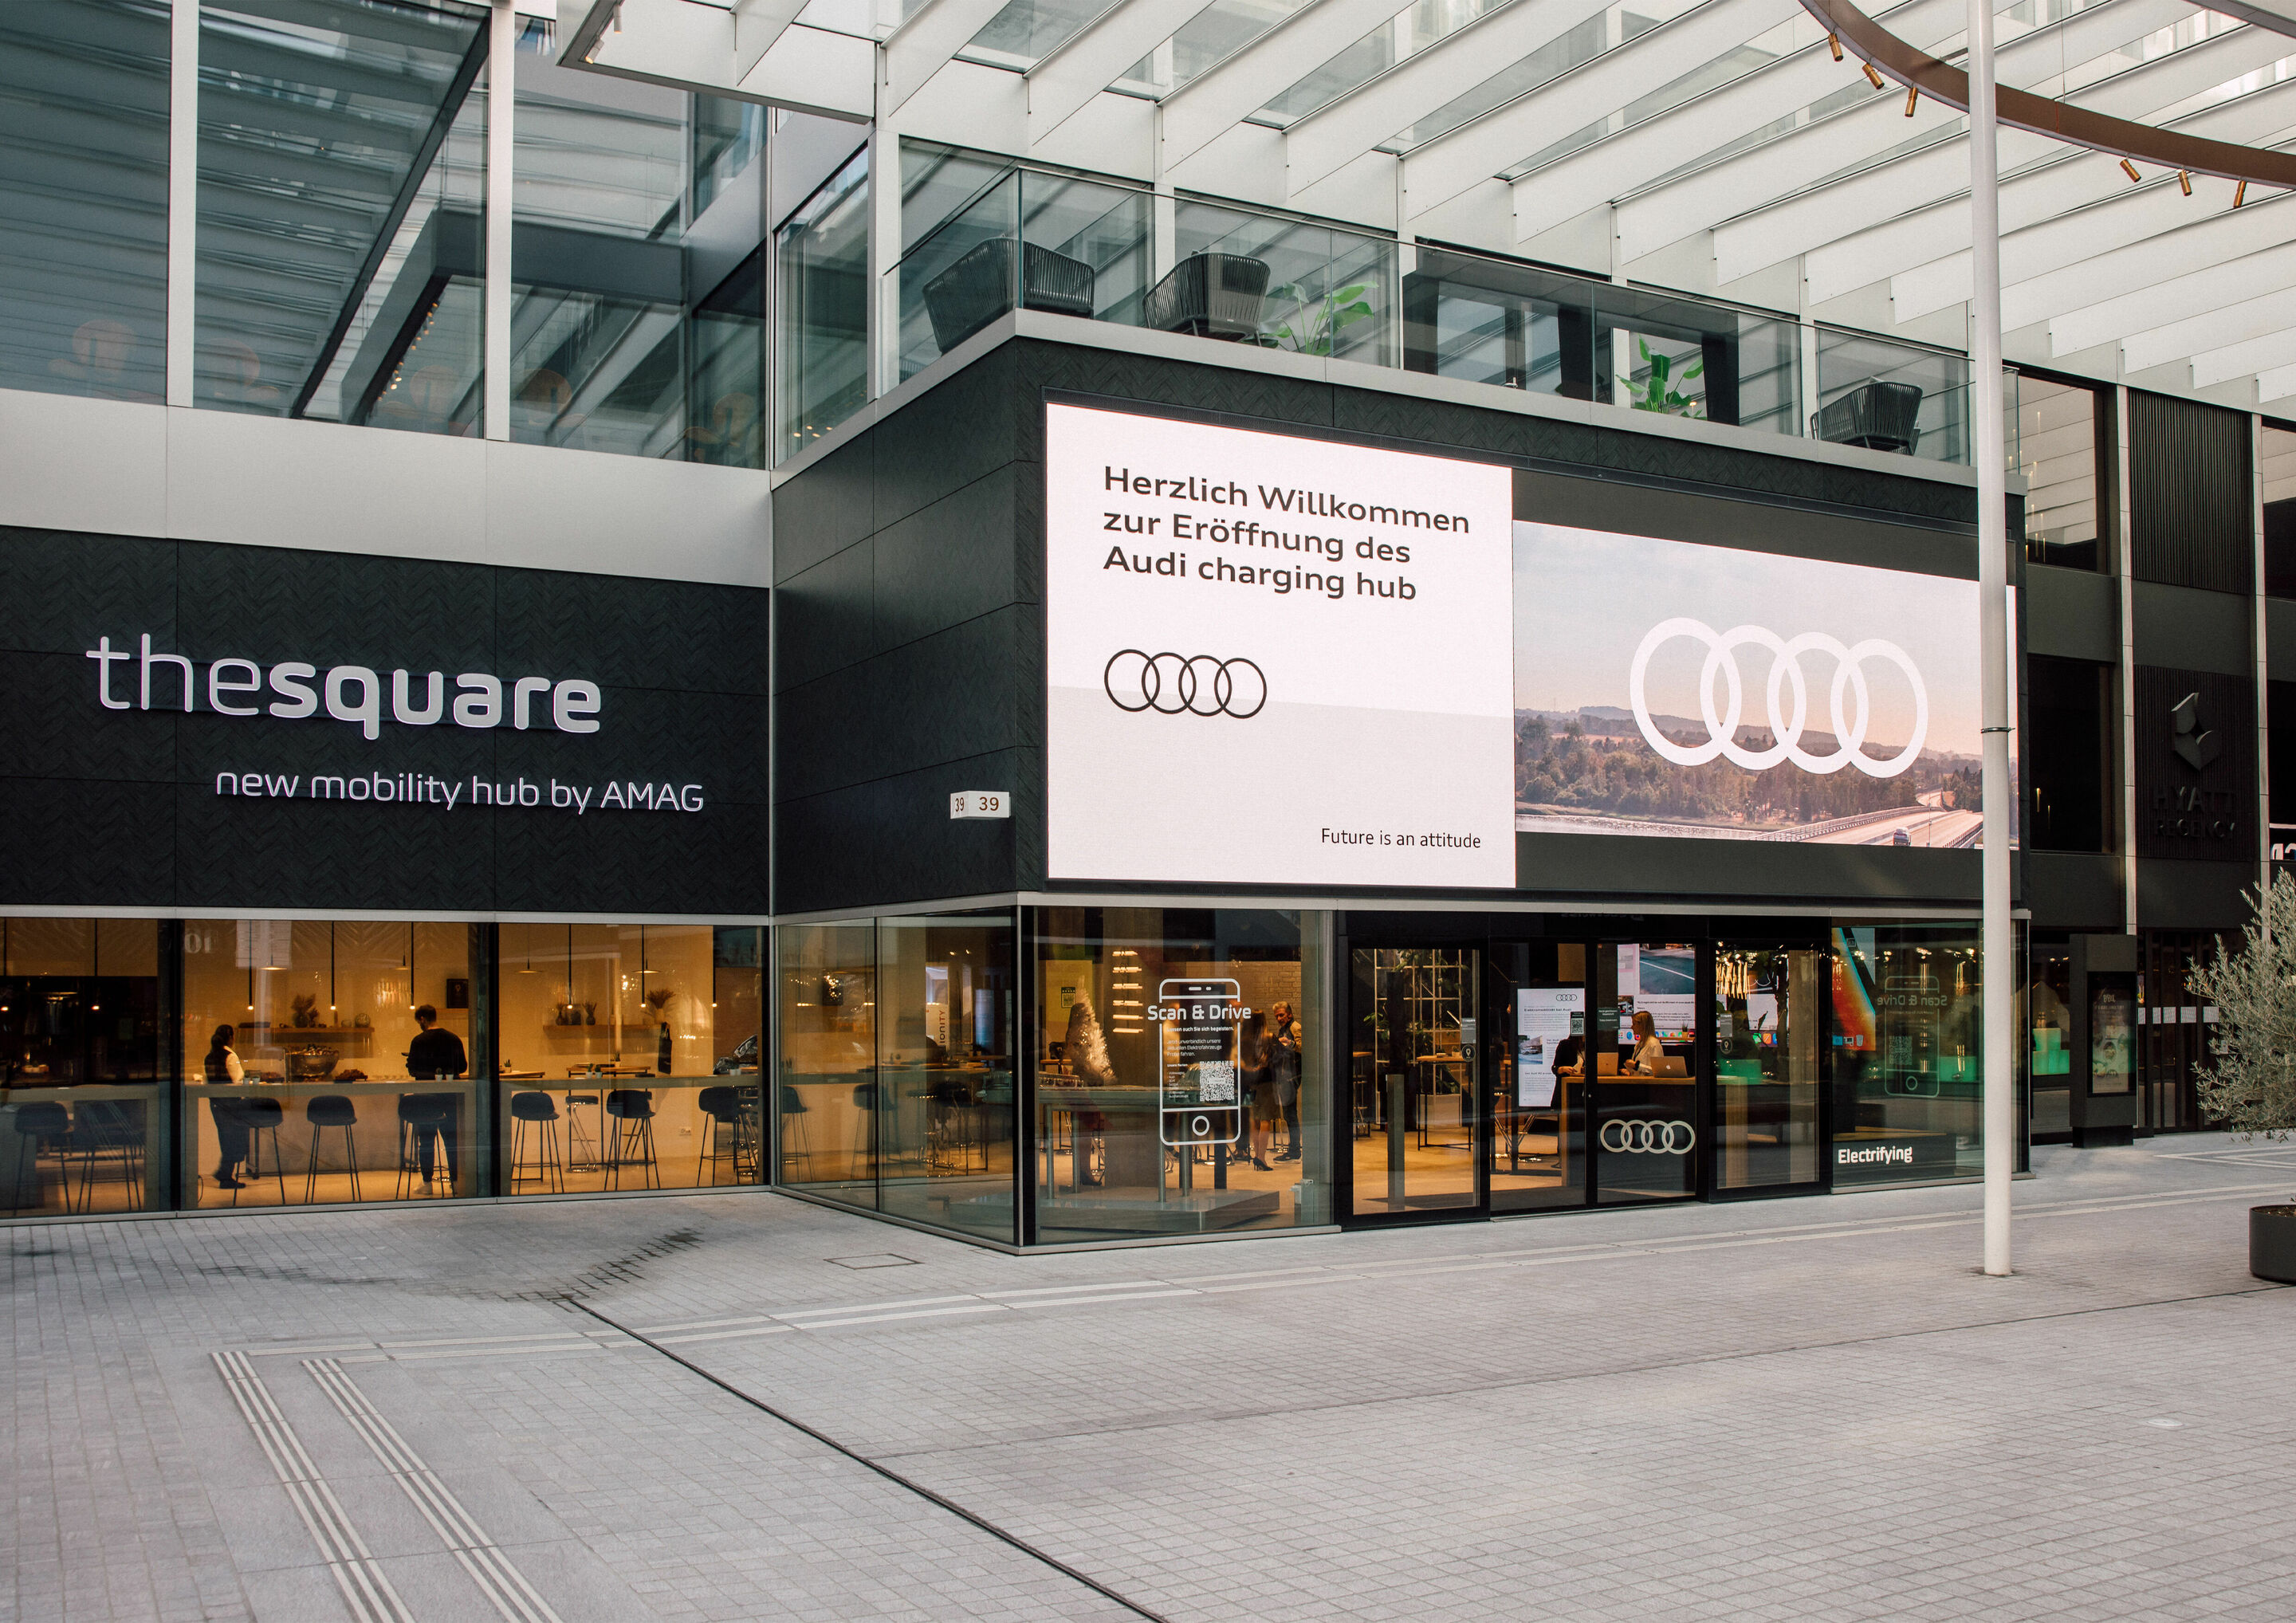 Elektrisierendes Opening des ersten Audi charging hub in Zürich